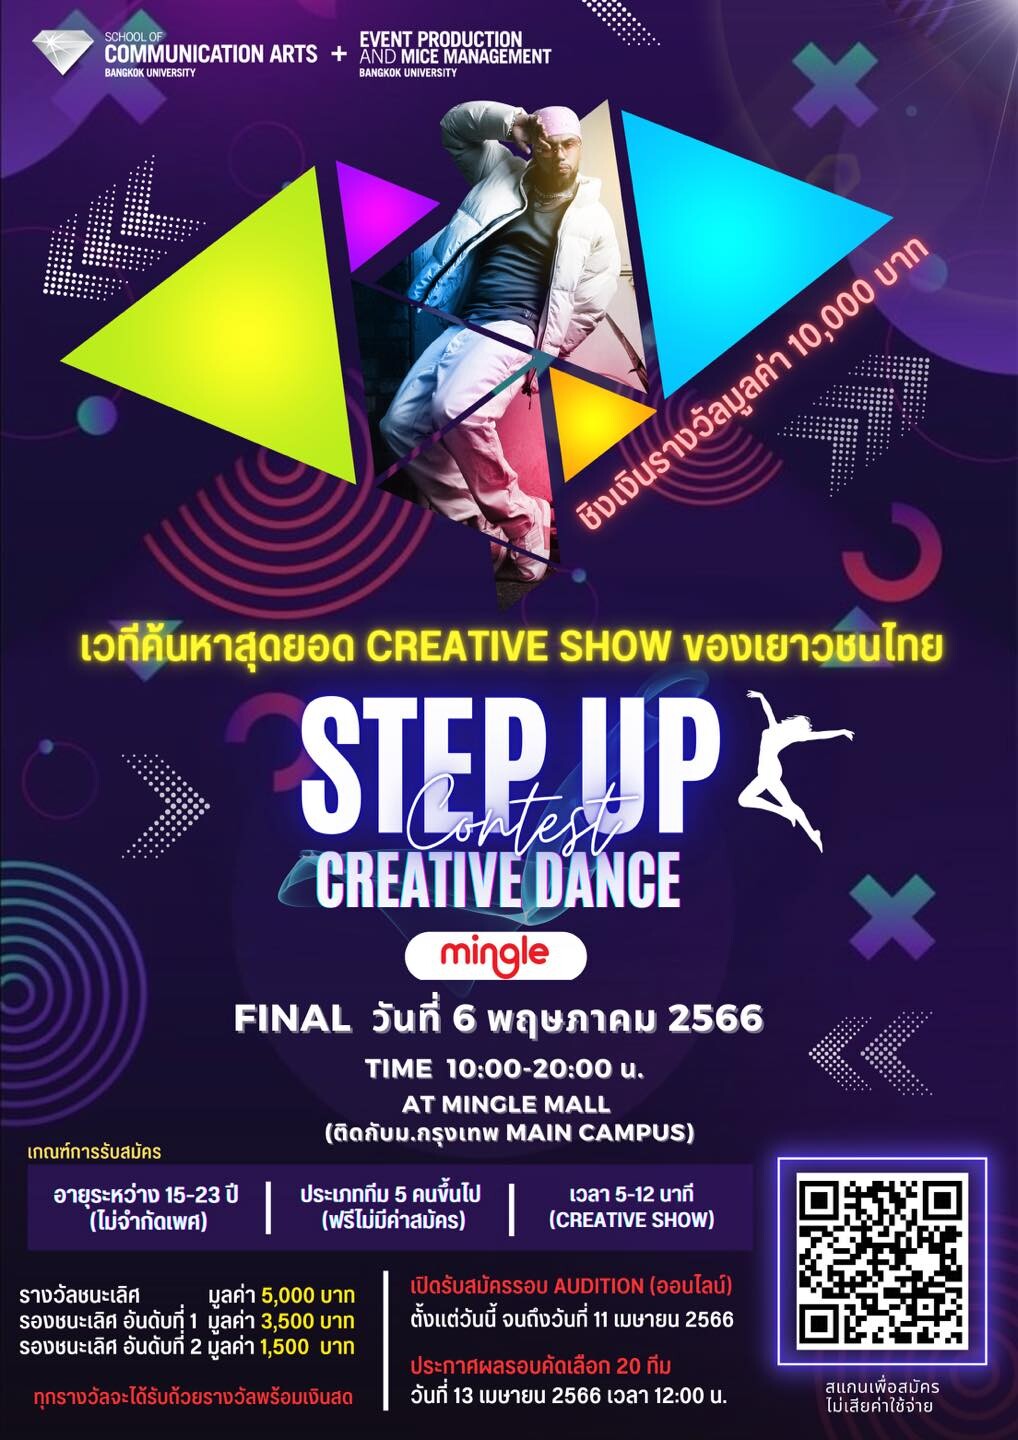 ขอเชิญร่วมแข่งขัน Creative Dance ใน "STEP UP Creative Dance Contest"